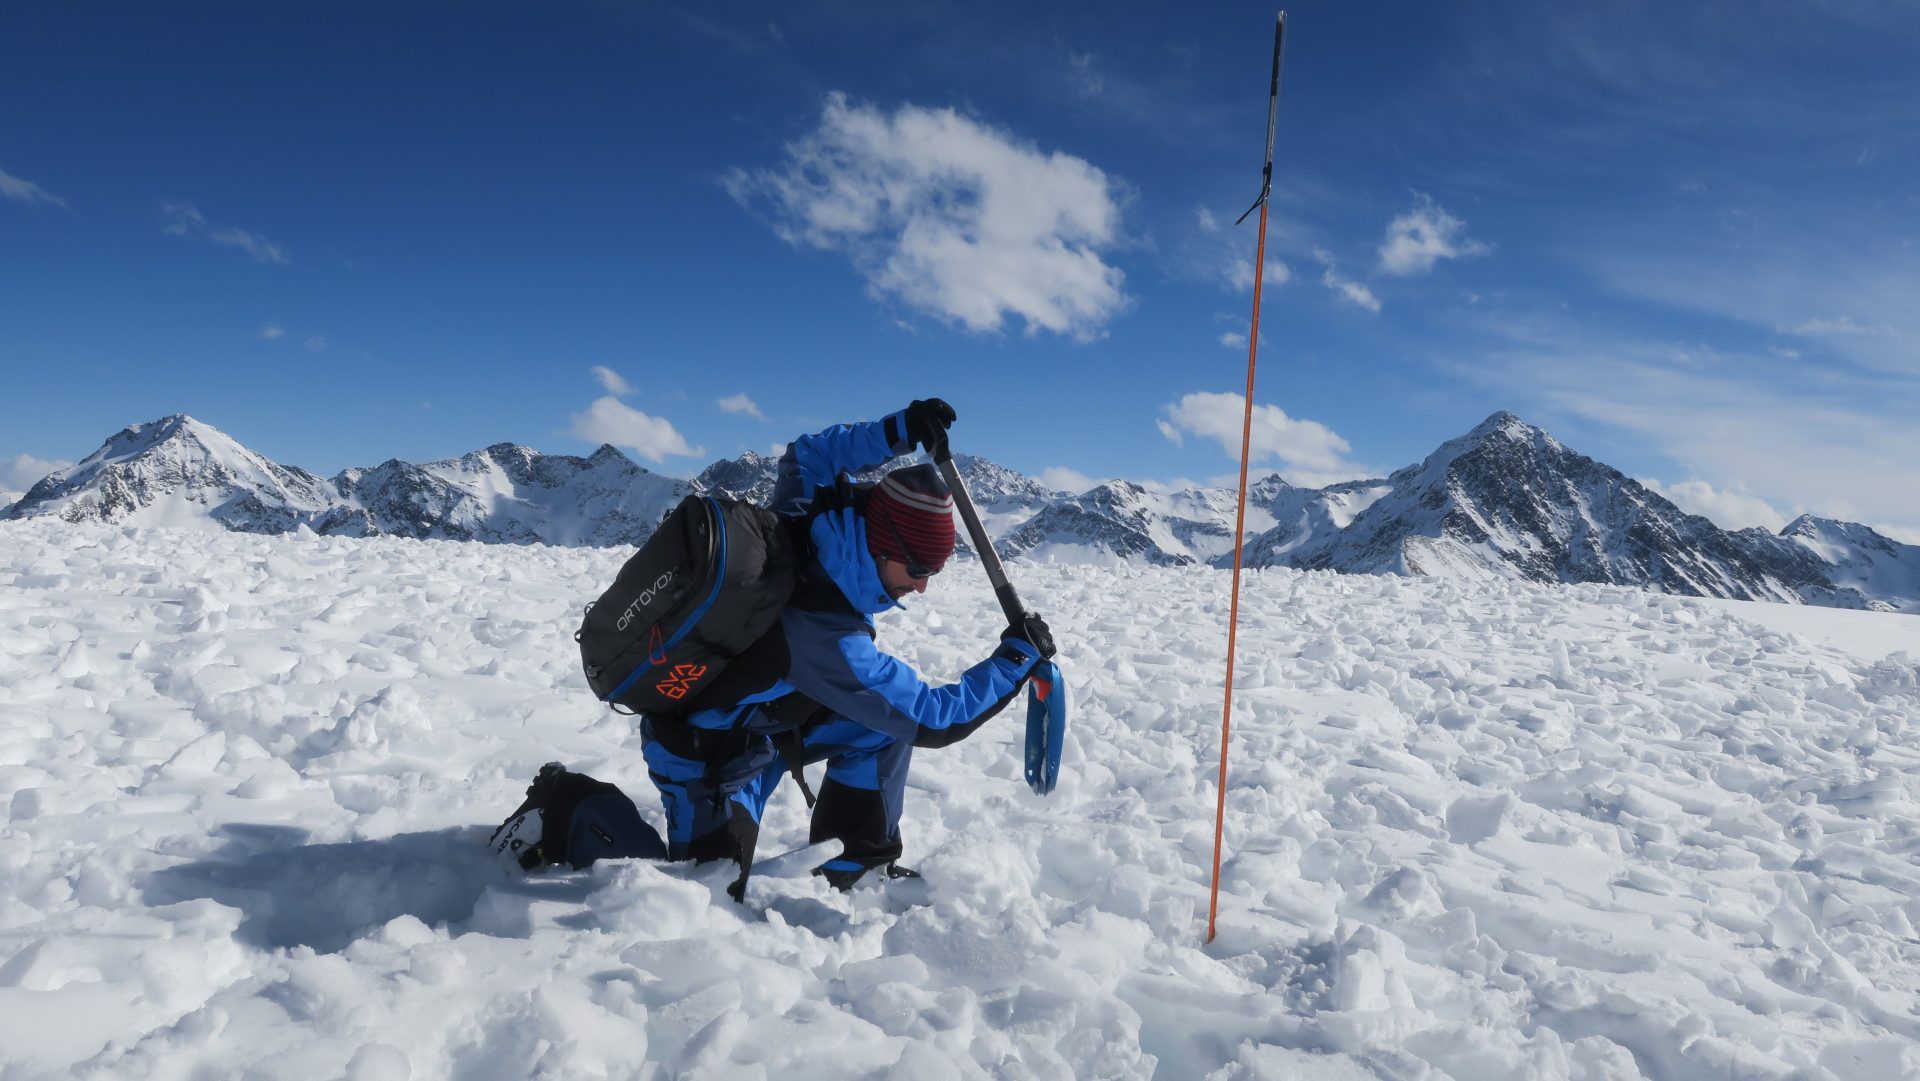 Bergsteigertipp: Richtig sondieren, effizient schaufeln